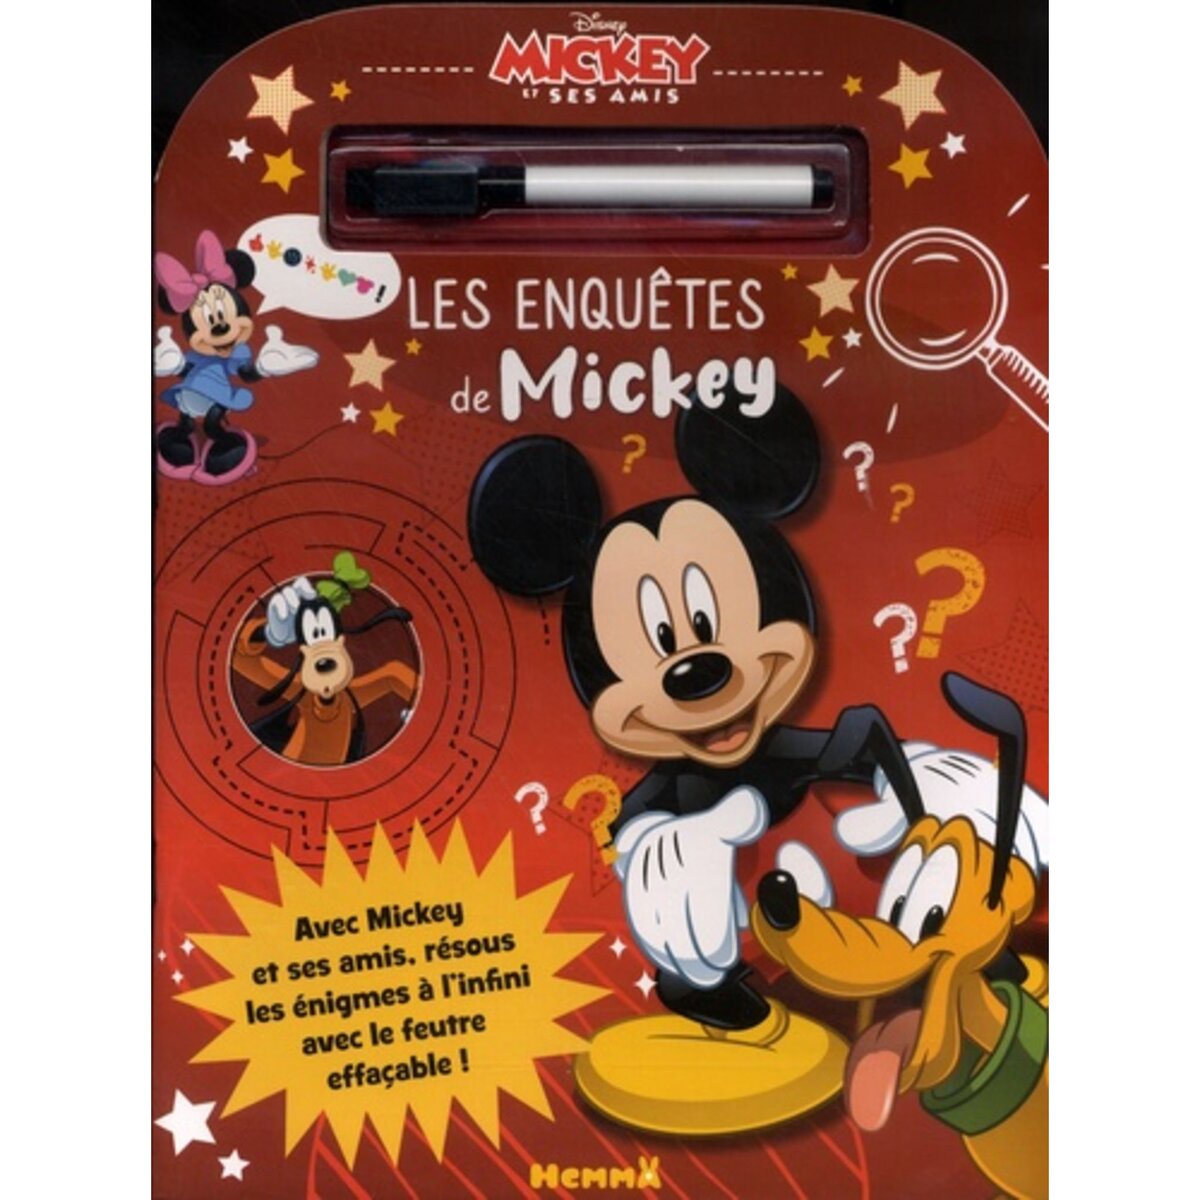  LES ENQUETES DE MICKEY. AVEC 1 FEUTRE EFFACABLE, Disney